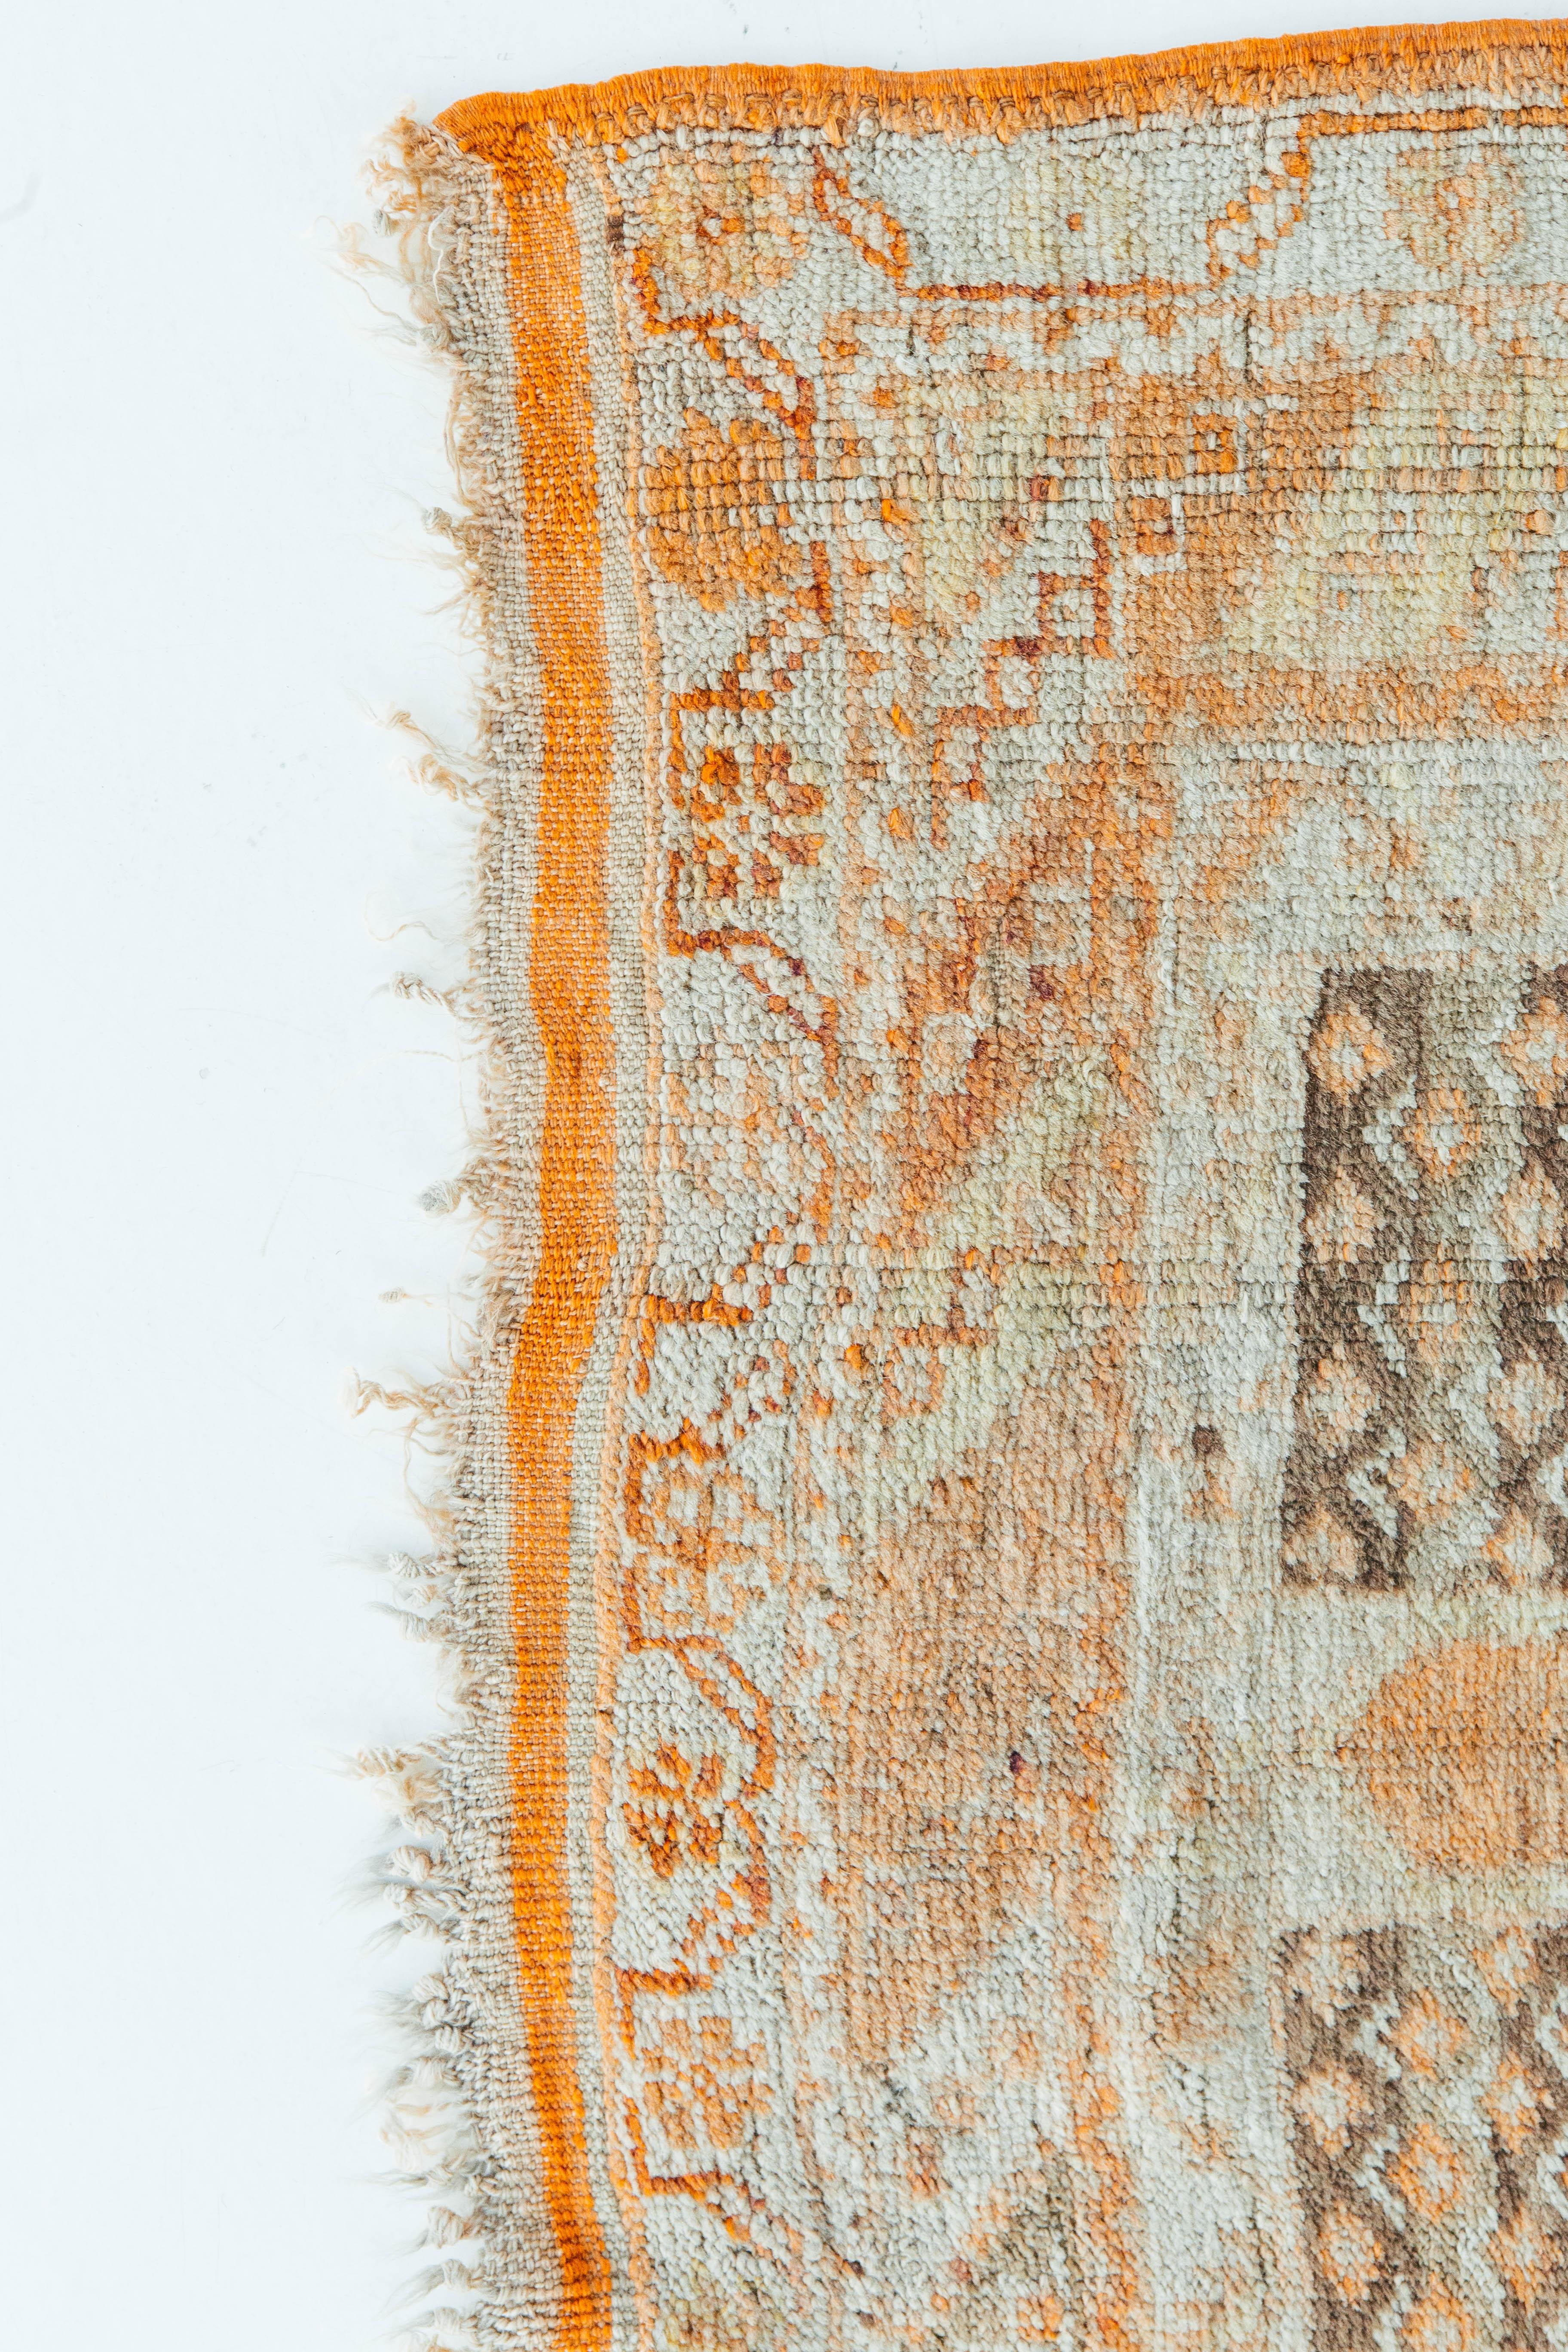 Ein lebendiger und interessanter antiker türkischer Oushak-Teppich. Dieses Stück enthält ein zentrales Medaillon mit umliegenden Stammesmustern in Safran, Vintage-Blau und Grautönen. Er eignet sich für eine Vielzahl von Innenräumen und verleiht